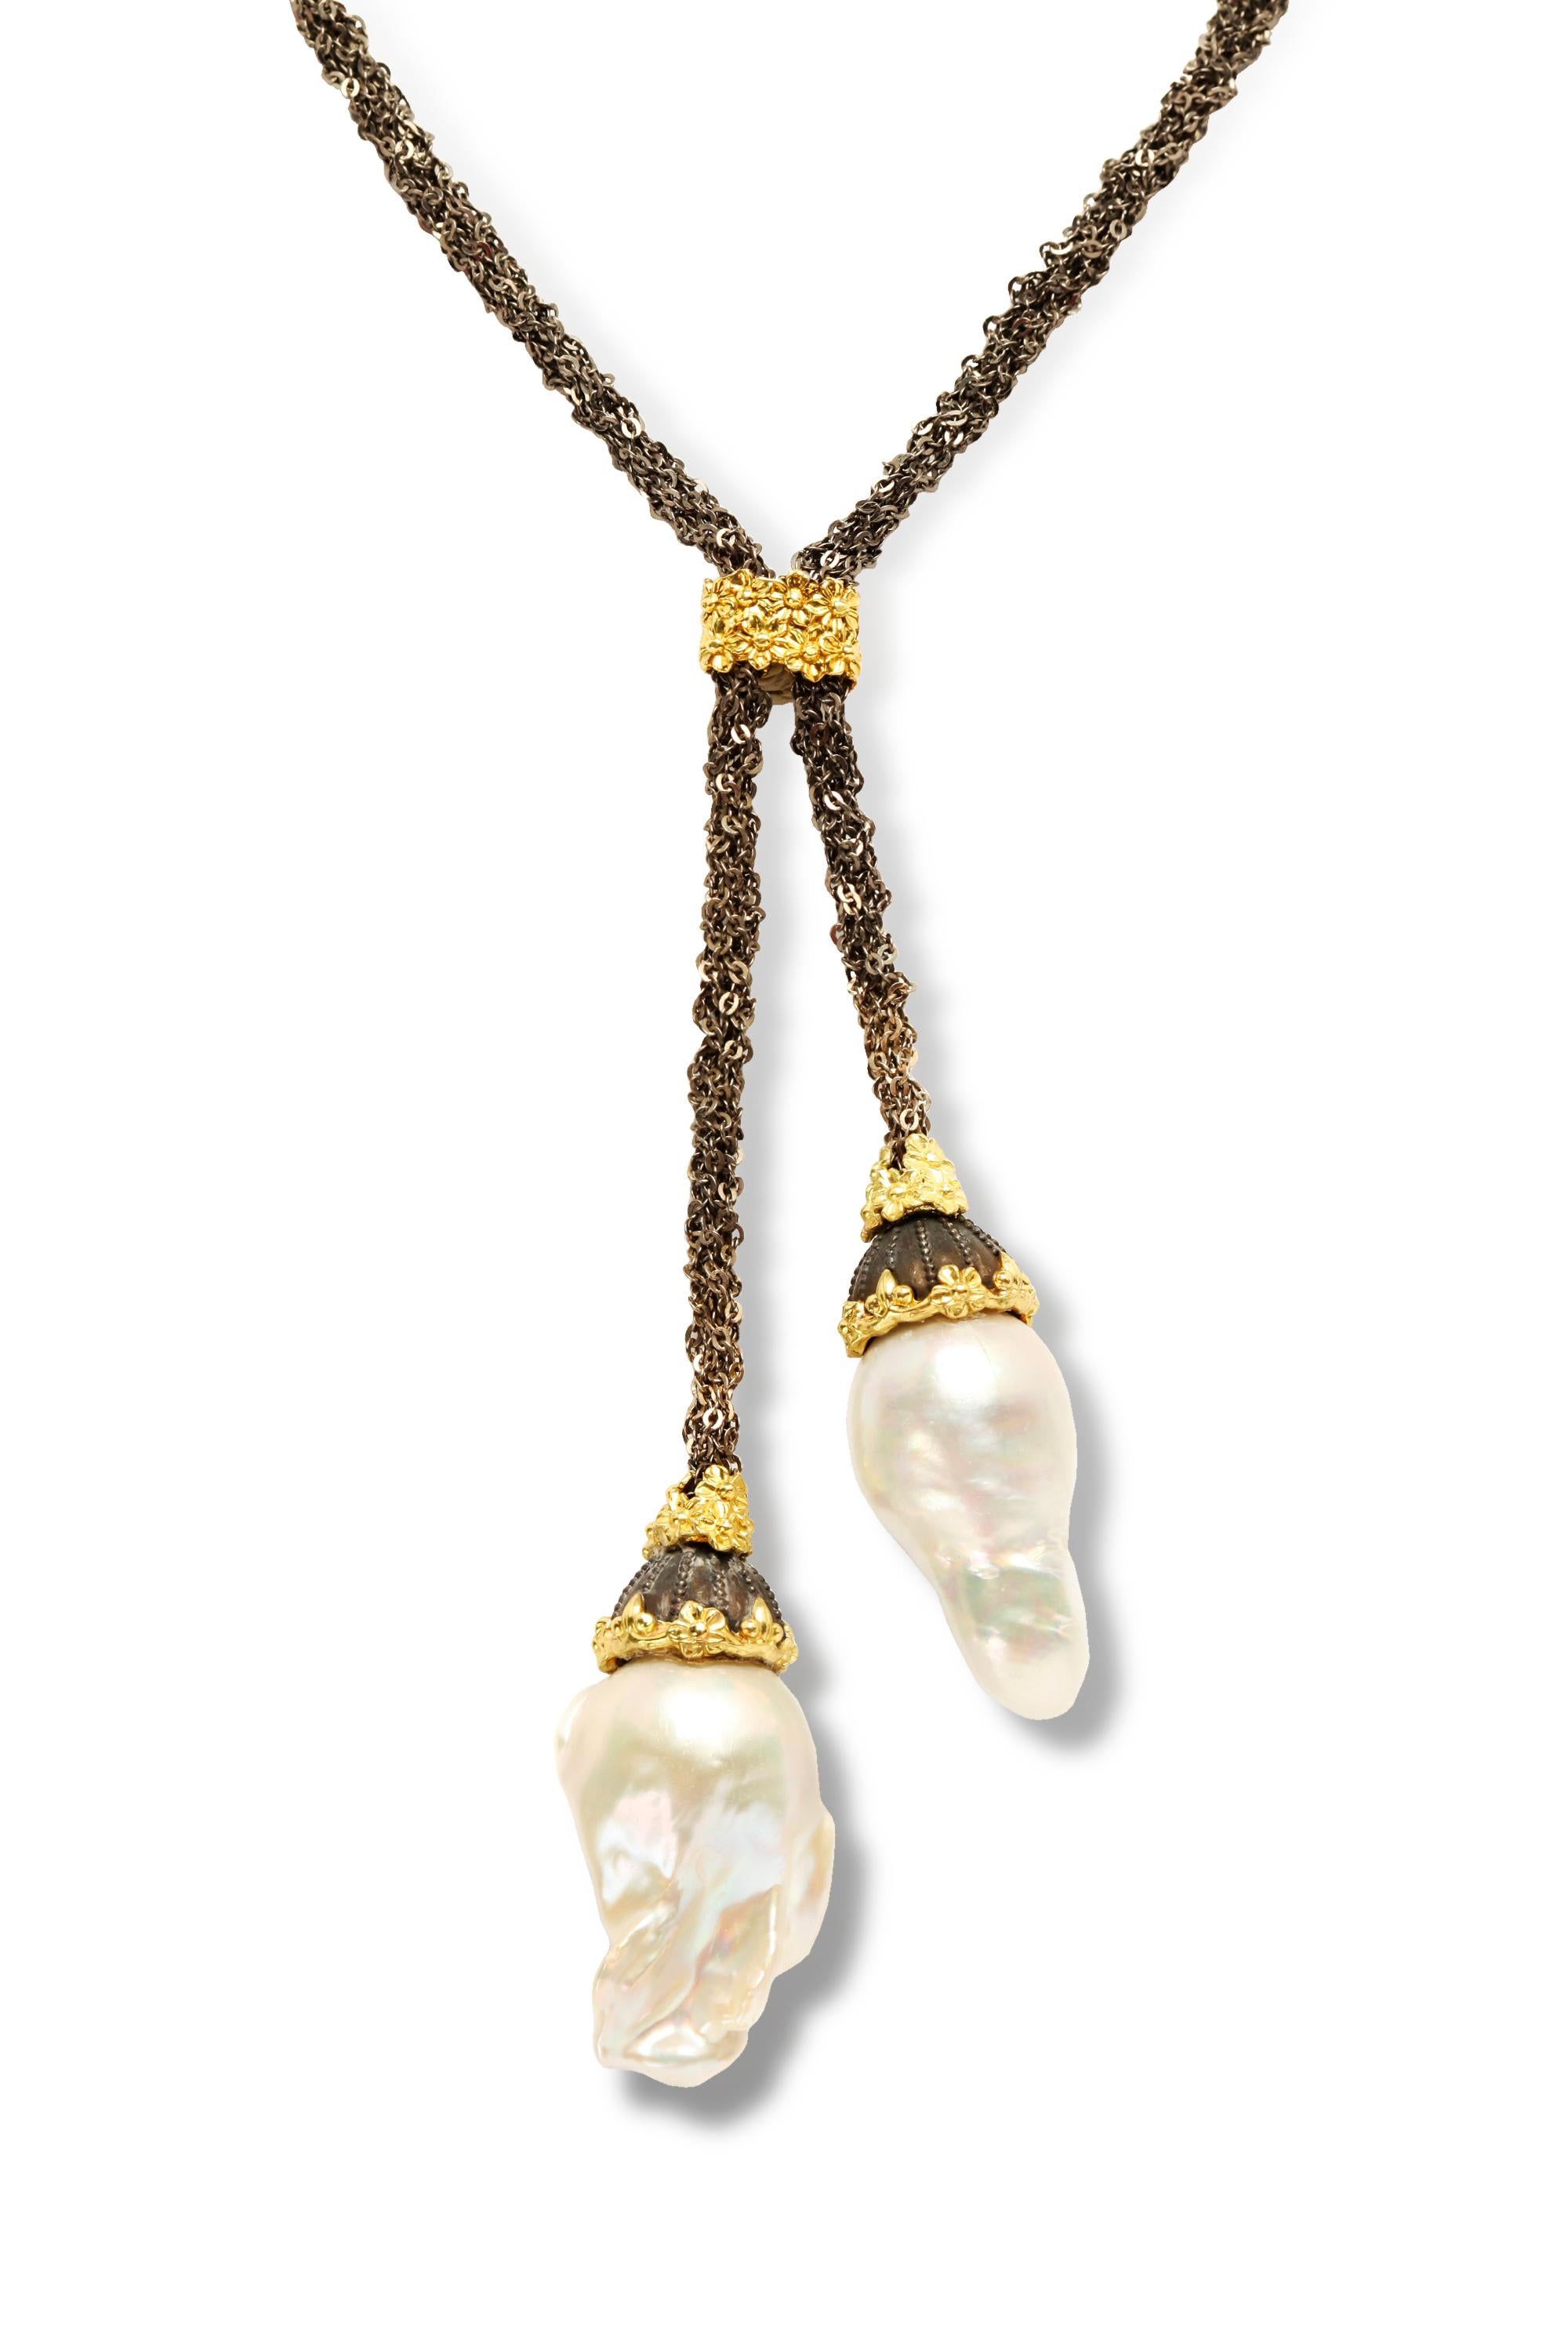 Chaîne en argent vieilli Stambolian Mesh  Collier Lariat en or 18K et perles baroques 

Ce collier unique est composé d'une magnifique chaîne en maille reliée au centre par un motif floral en or.

Le design mène à deux gouttes avec des perles